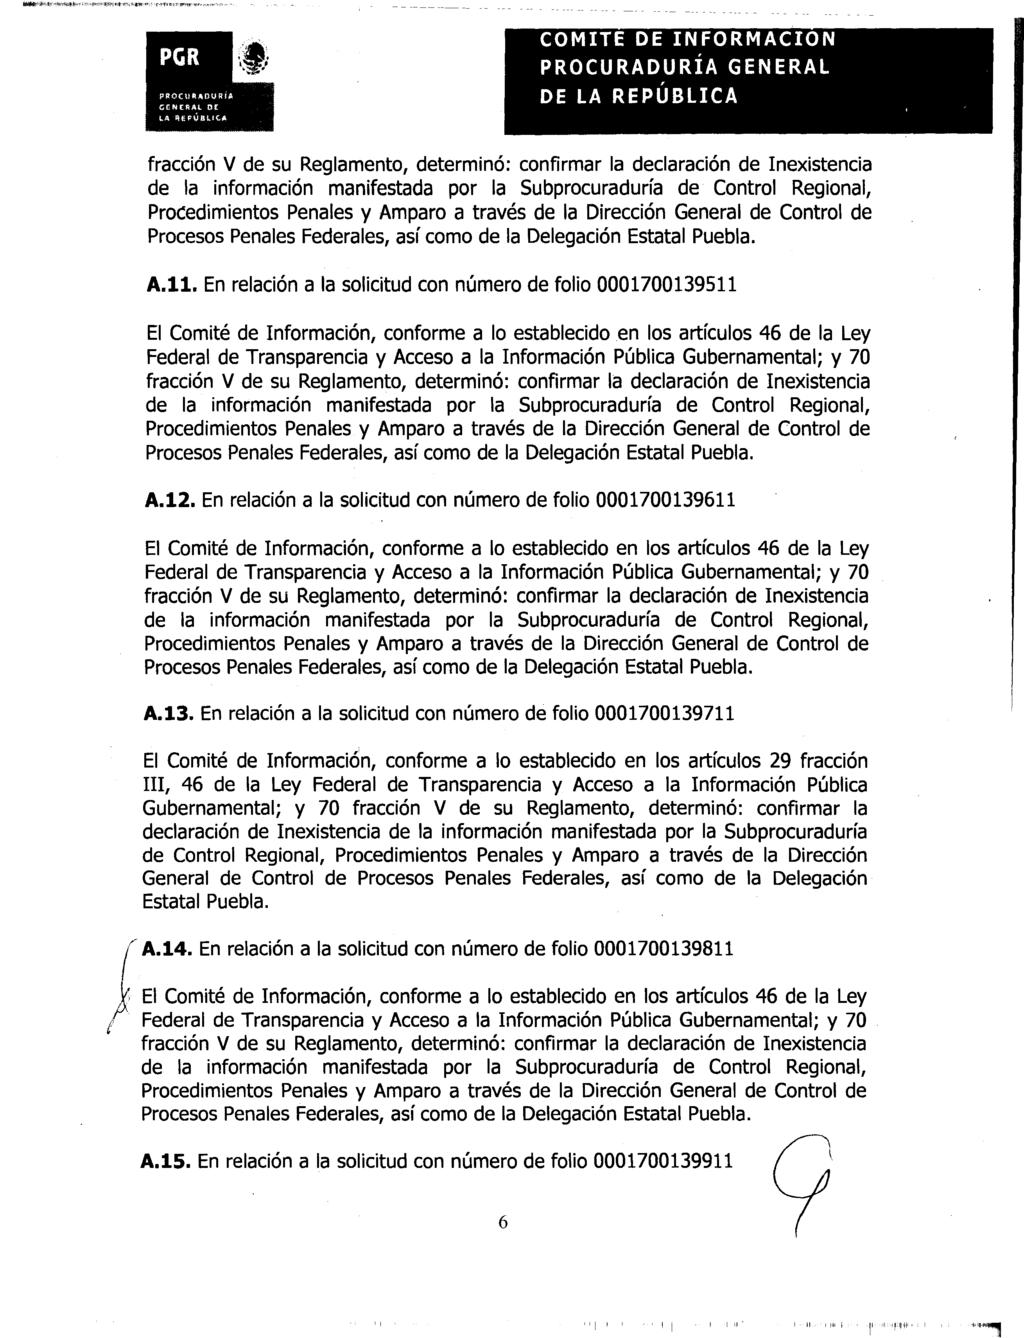 COMITE DE INFORMACION PROCURADURIA GENERAL A.11. En relación a la solicitud con número de folio 0001700139